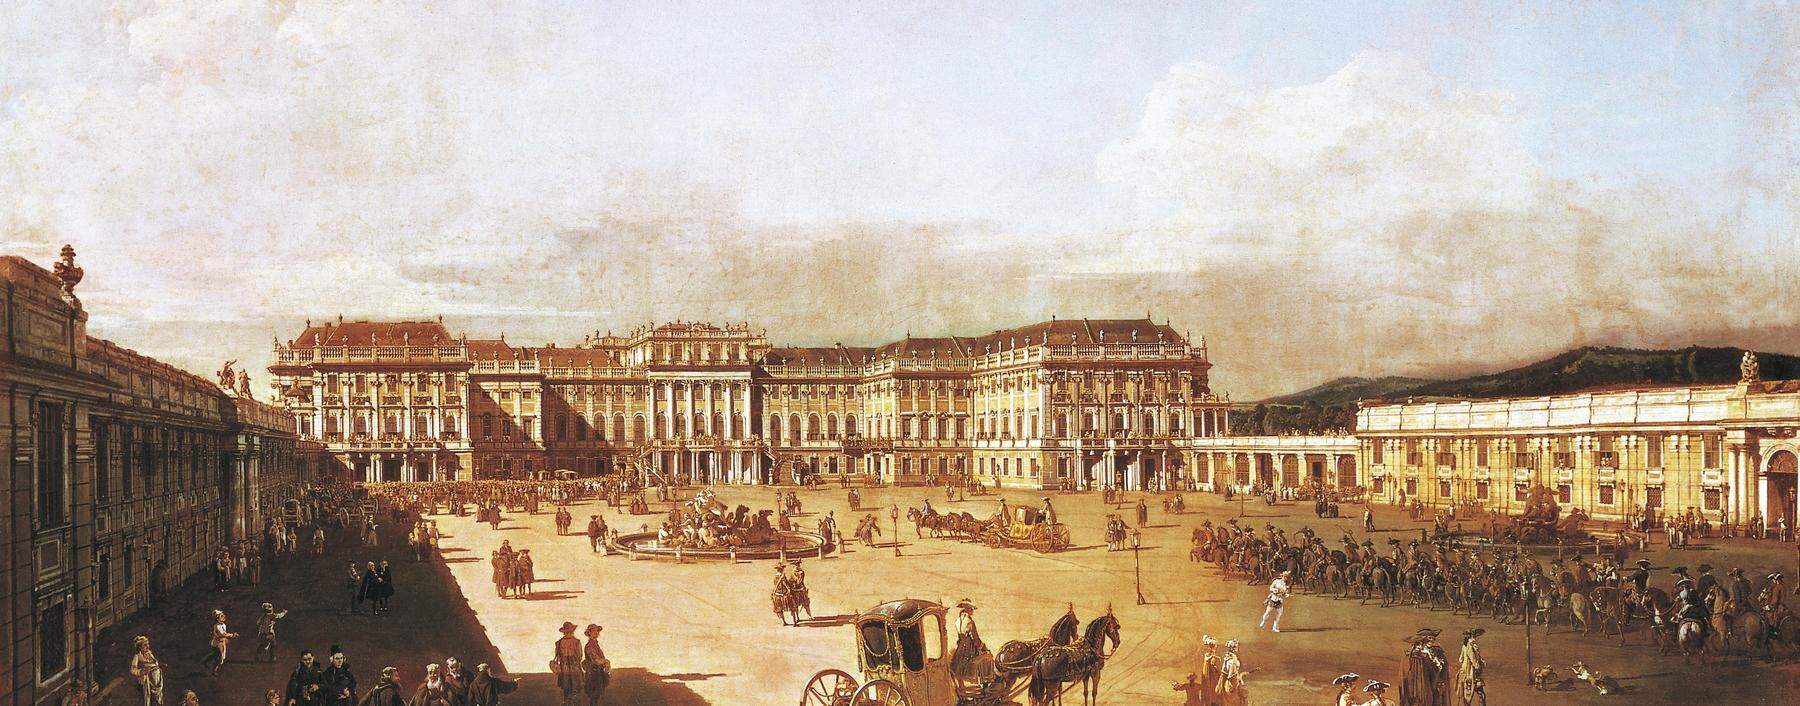 Das kaiserliche Lustschloss Schönbrunn von Bernardo Bellotto, genannt Canaletto, 1759/60, zu sehen im Kunsthistorischen Museum. 